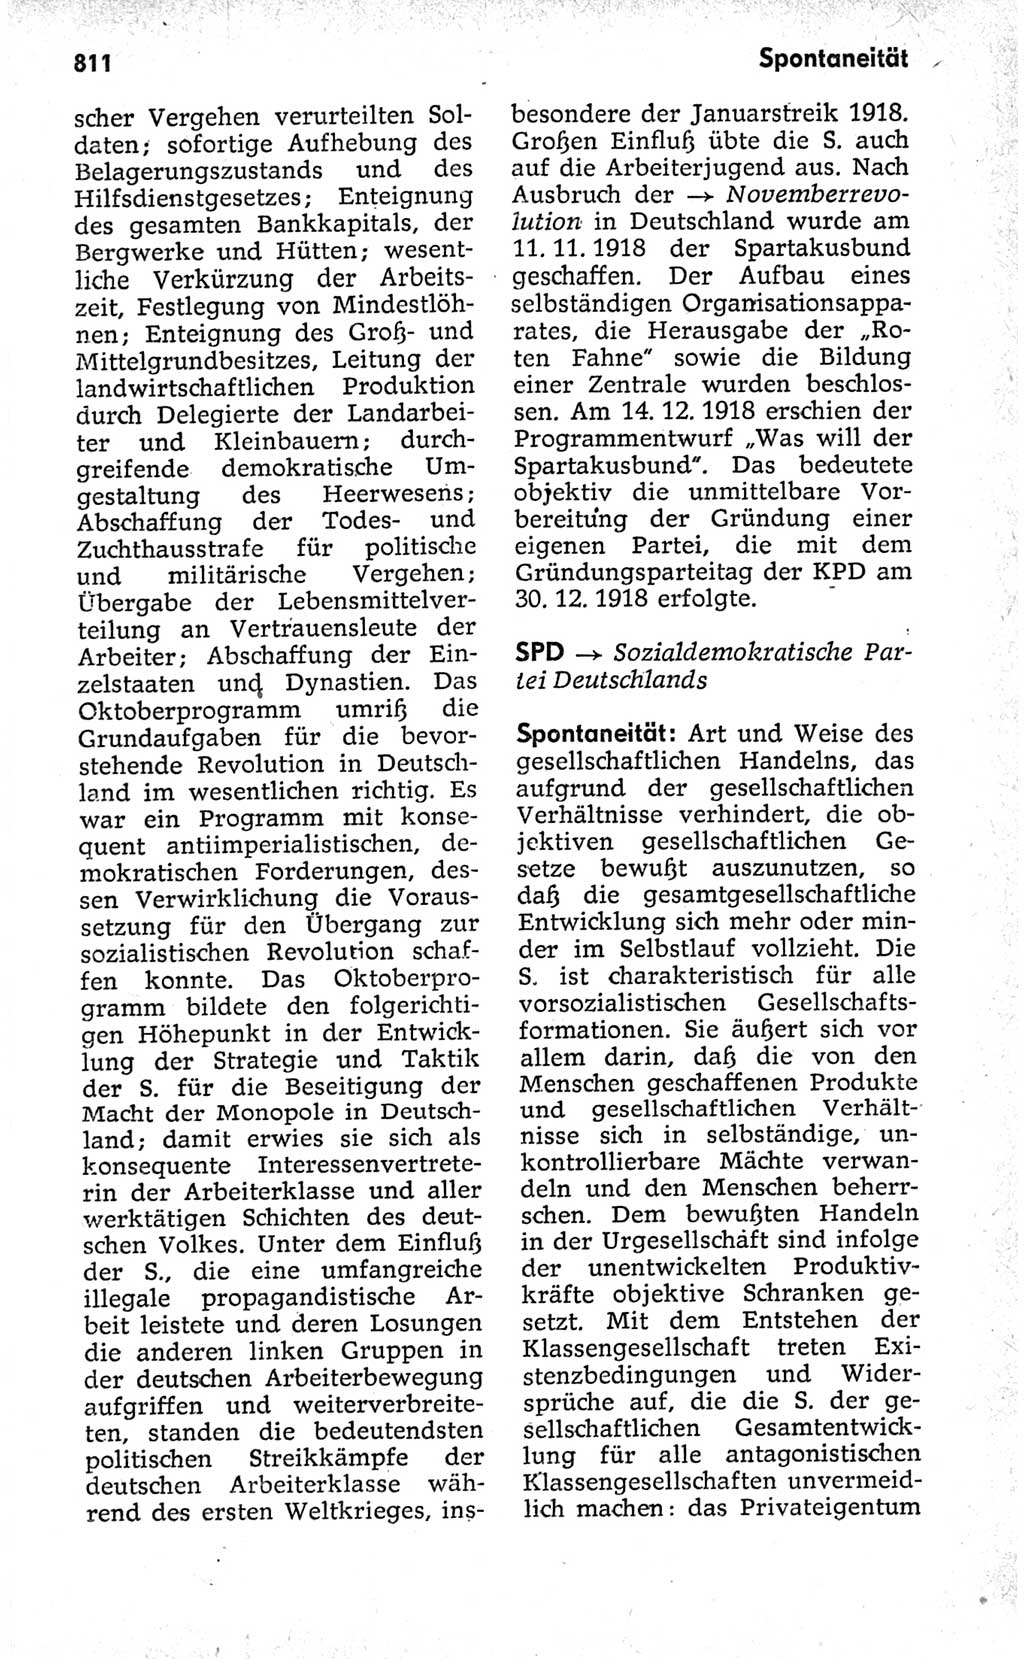 Kleines politisches Wörterbuch [Deutsche Demokratische Republik (DDR)] 1973, Seite 811 (Kl. pol. Wb. DDR 1973, S. 811)